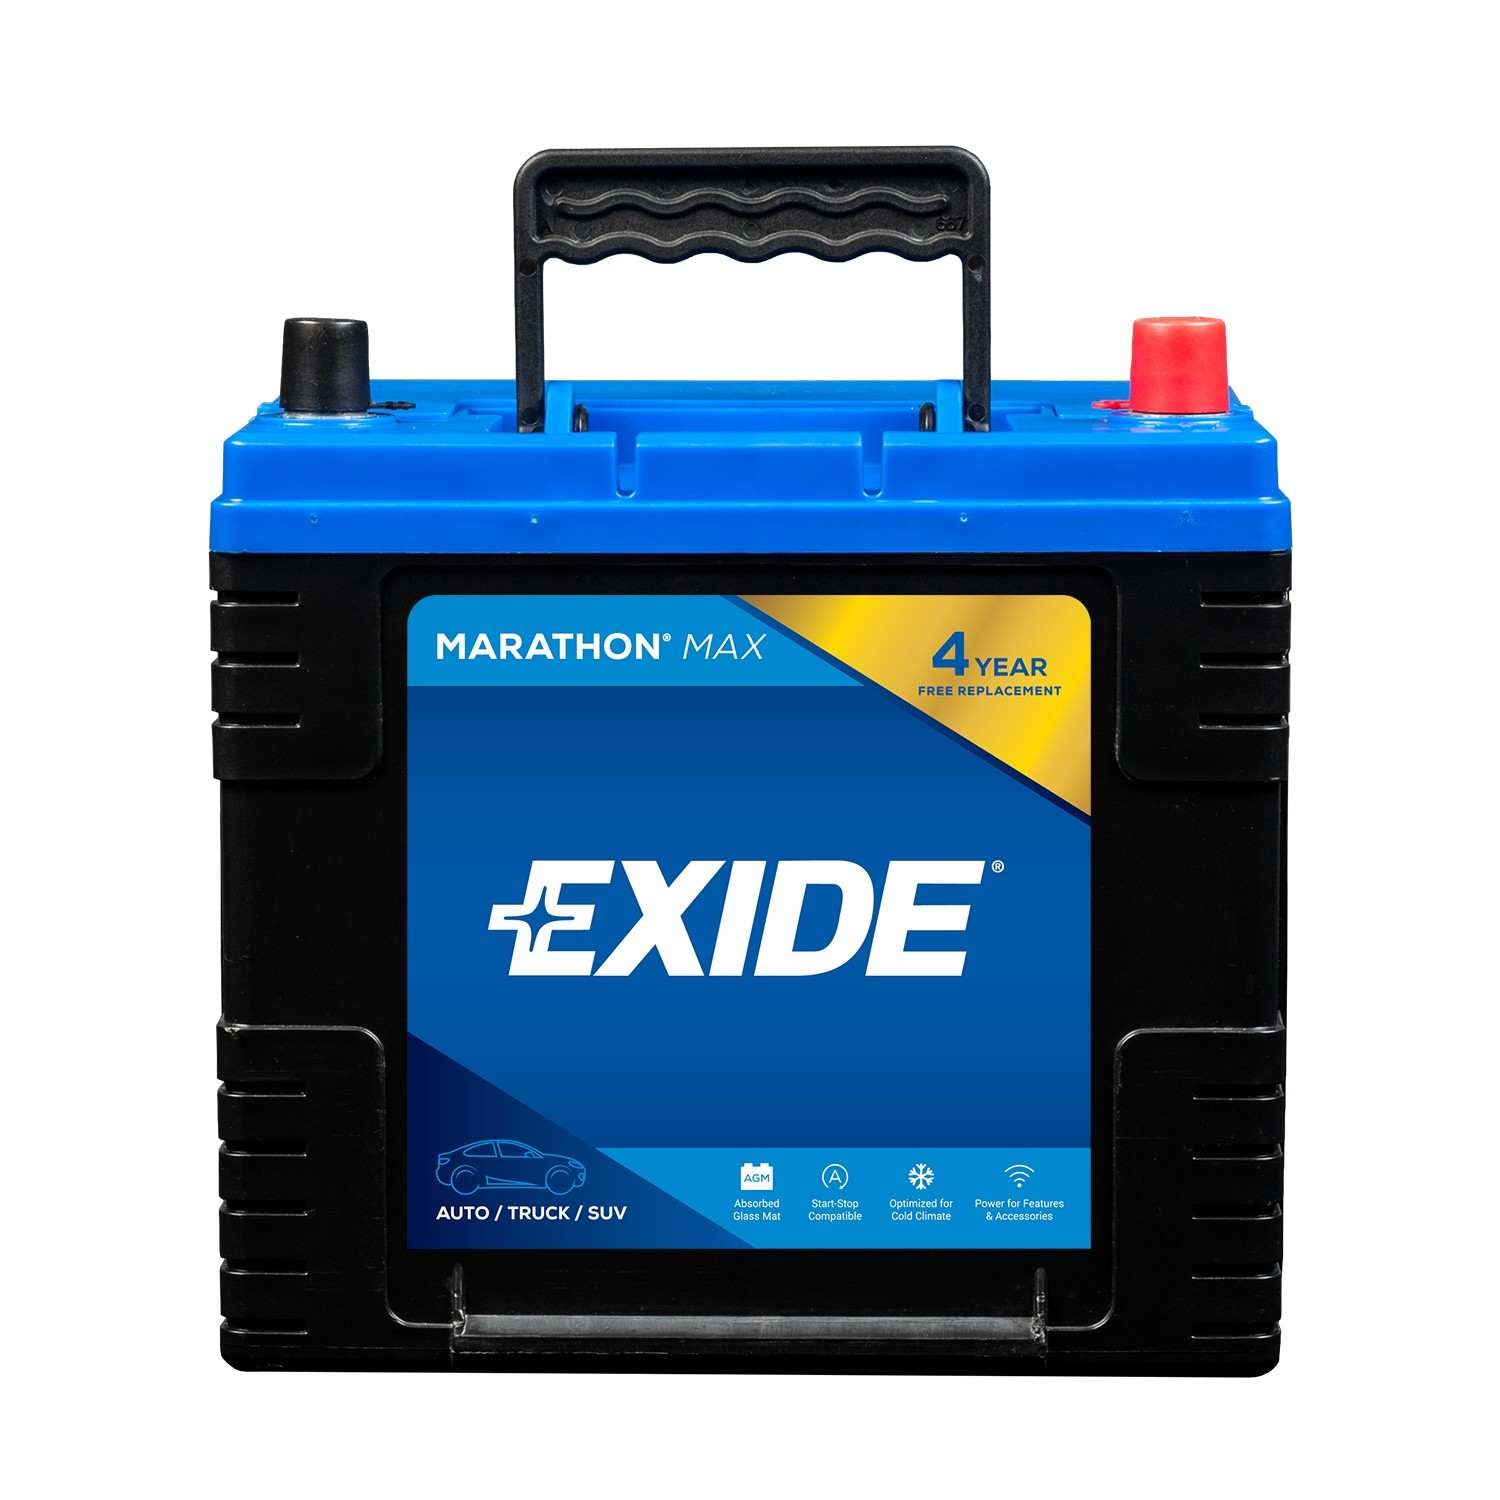 Exide EXIDE MARATHON MAX  top view frsport MX35